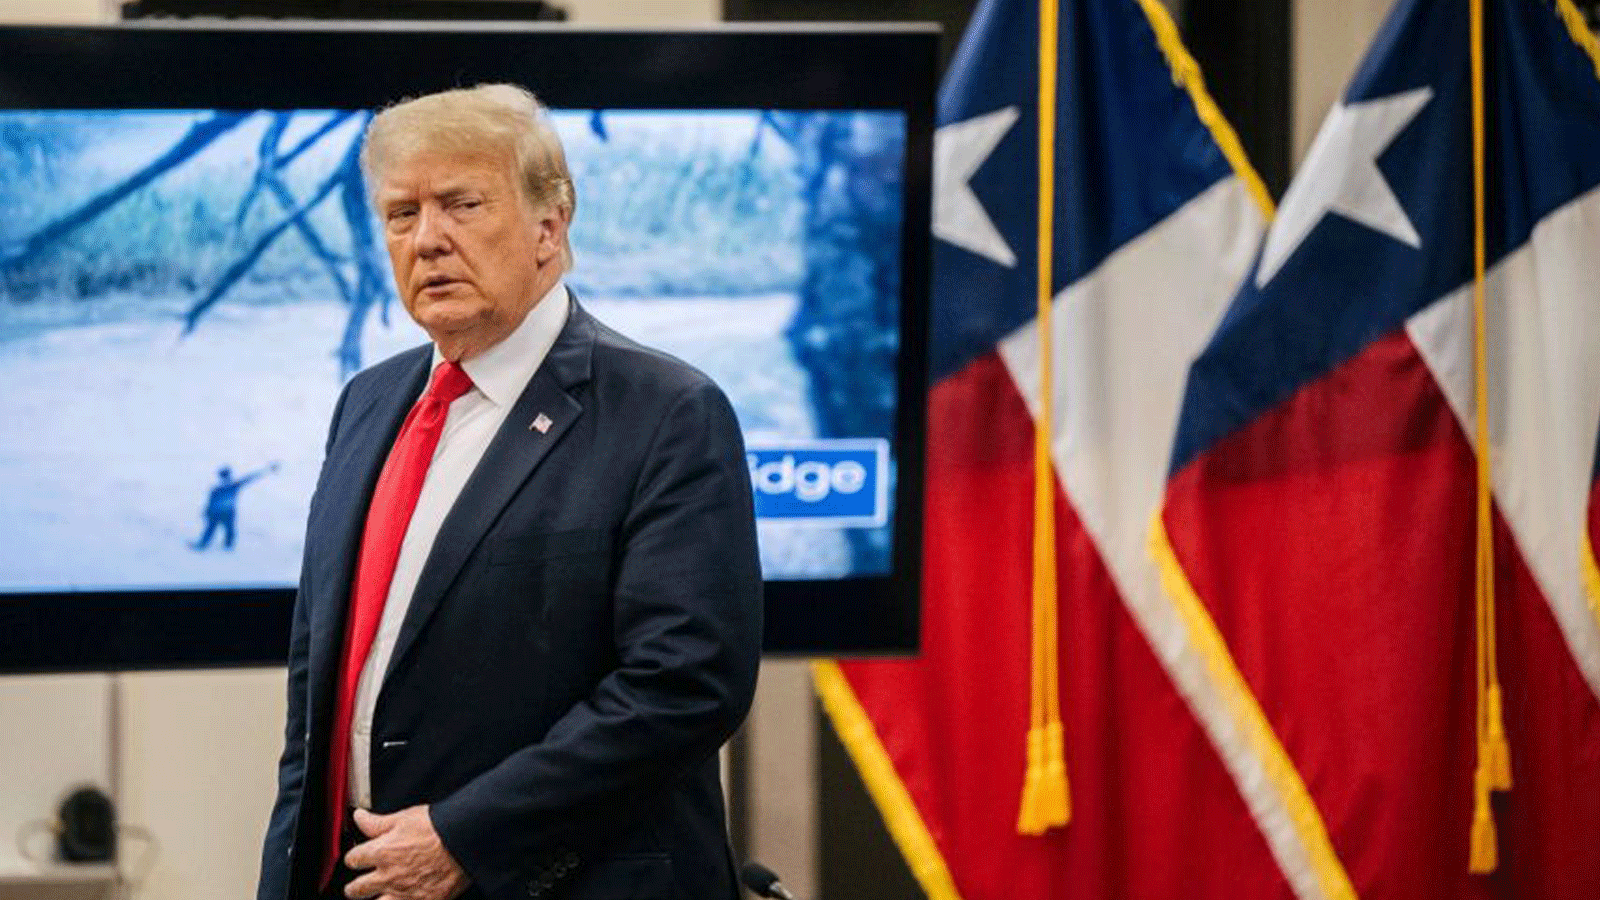 الرئيس الأمريكي السابق دونالد ترامب يصل إلى الحدود مع المكسيك لمناقشة خطط أخرى لتأمين الجدار الجنوبي في ويسلاكو، تكساس. بتاريخ 30 حزيران/ يونيو 2021